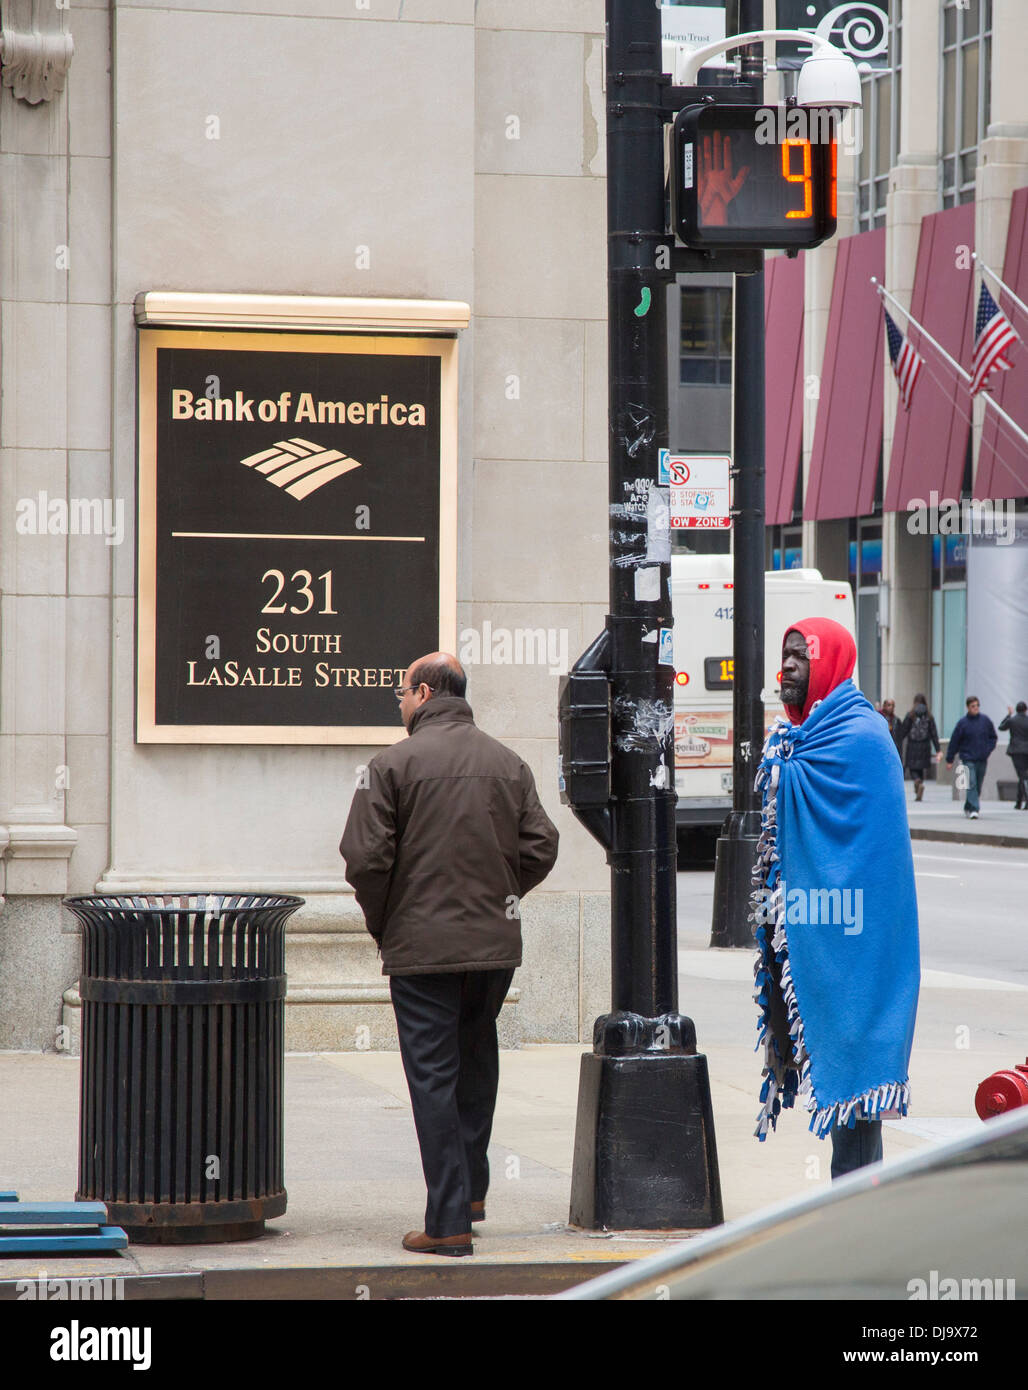 Chicago, Illinois - ein Obdachloser, eingewickelt in eine Decke außerhalb der Bank of America im Finanzdistrikt Chicagos. Stockfoto